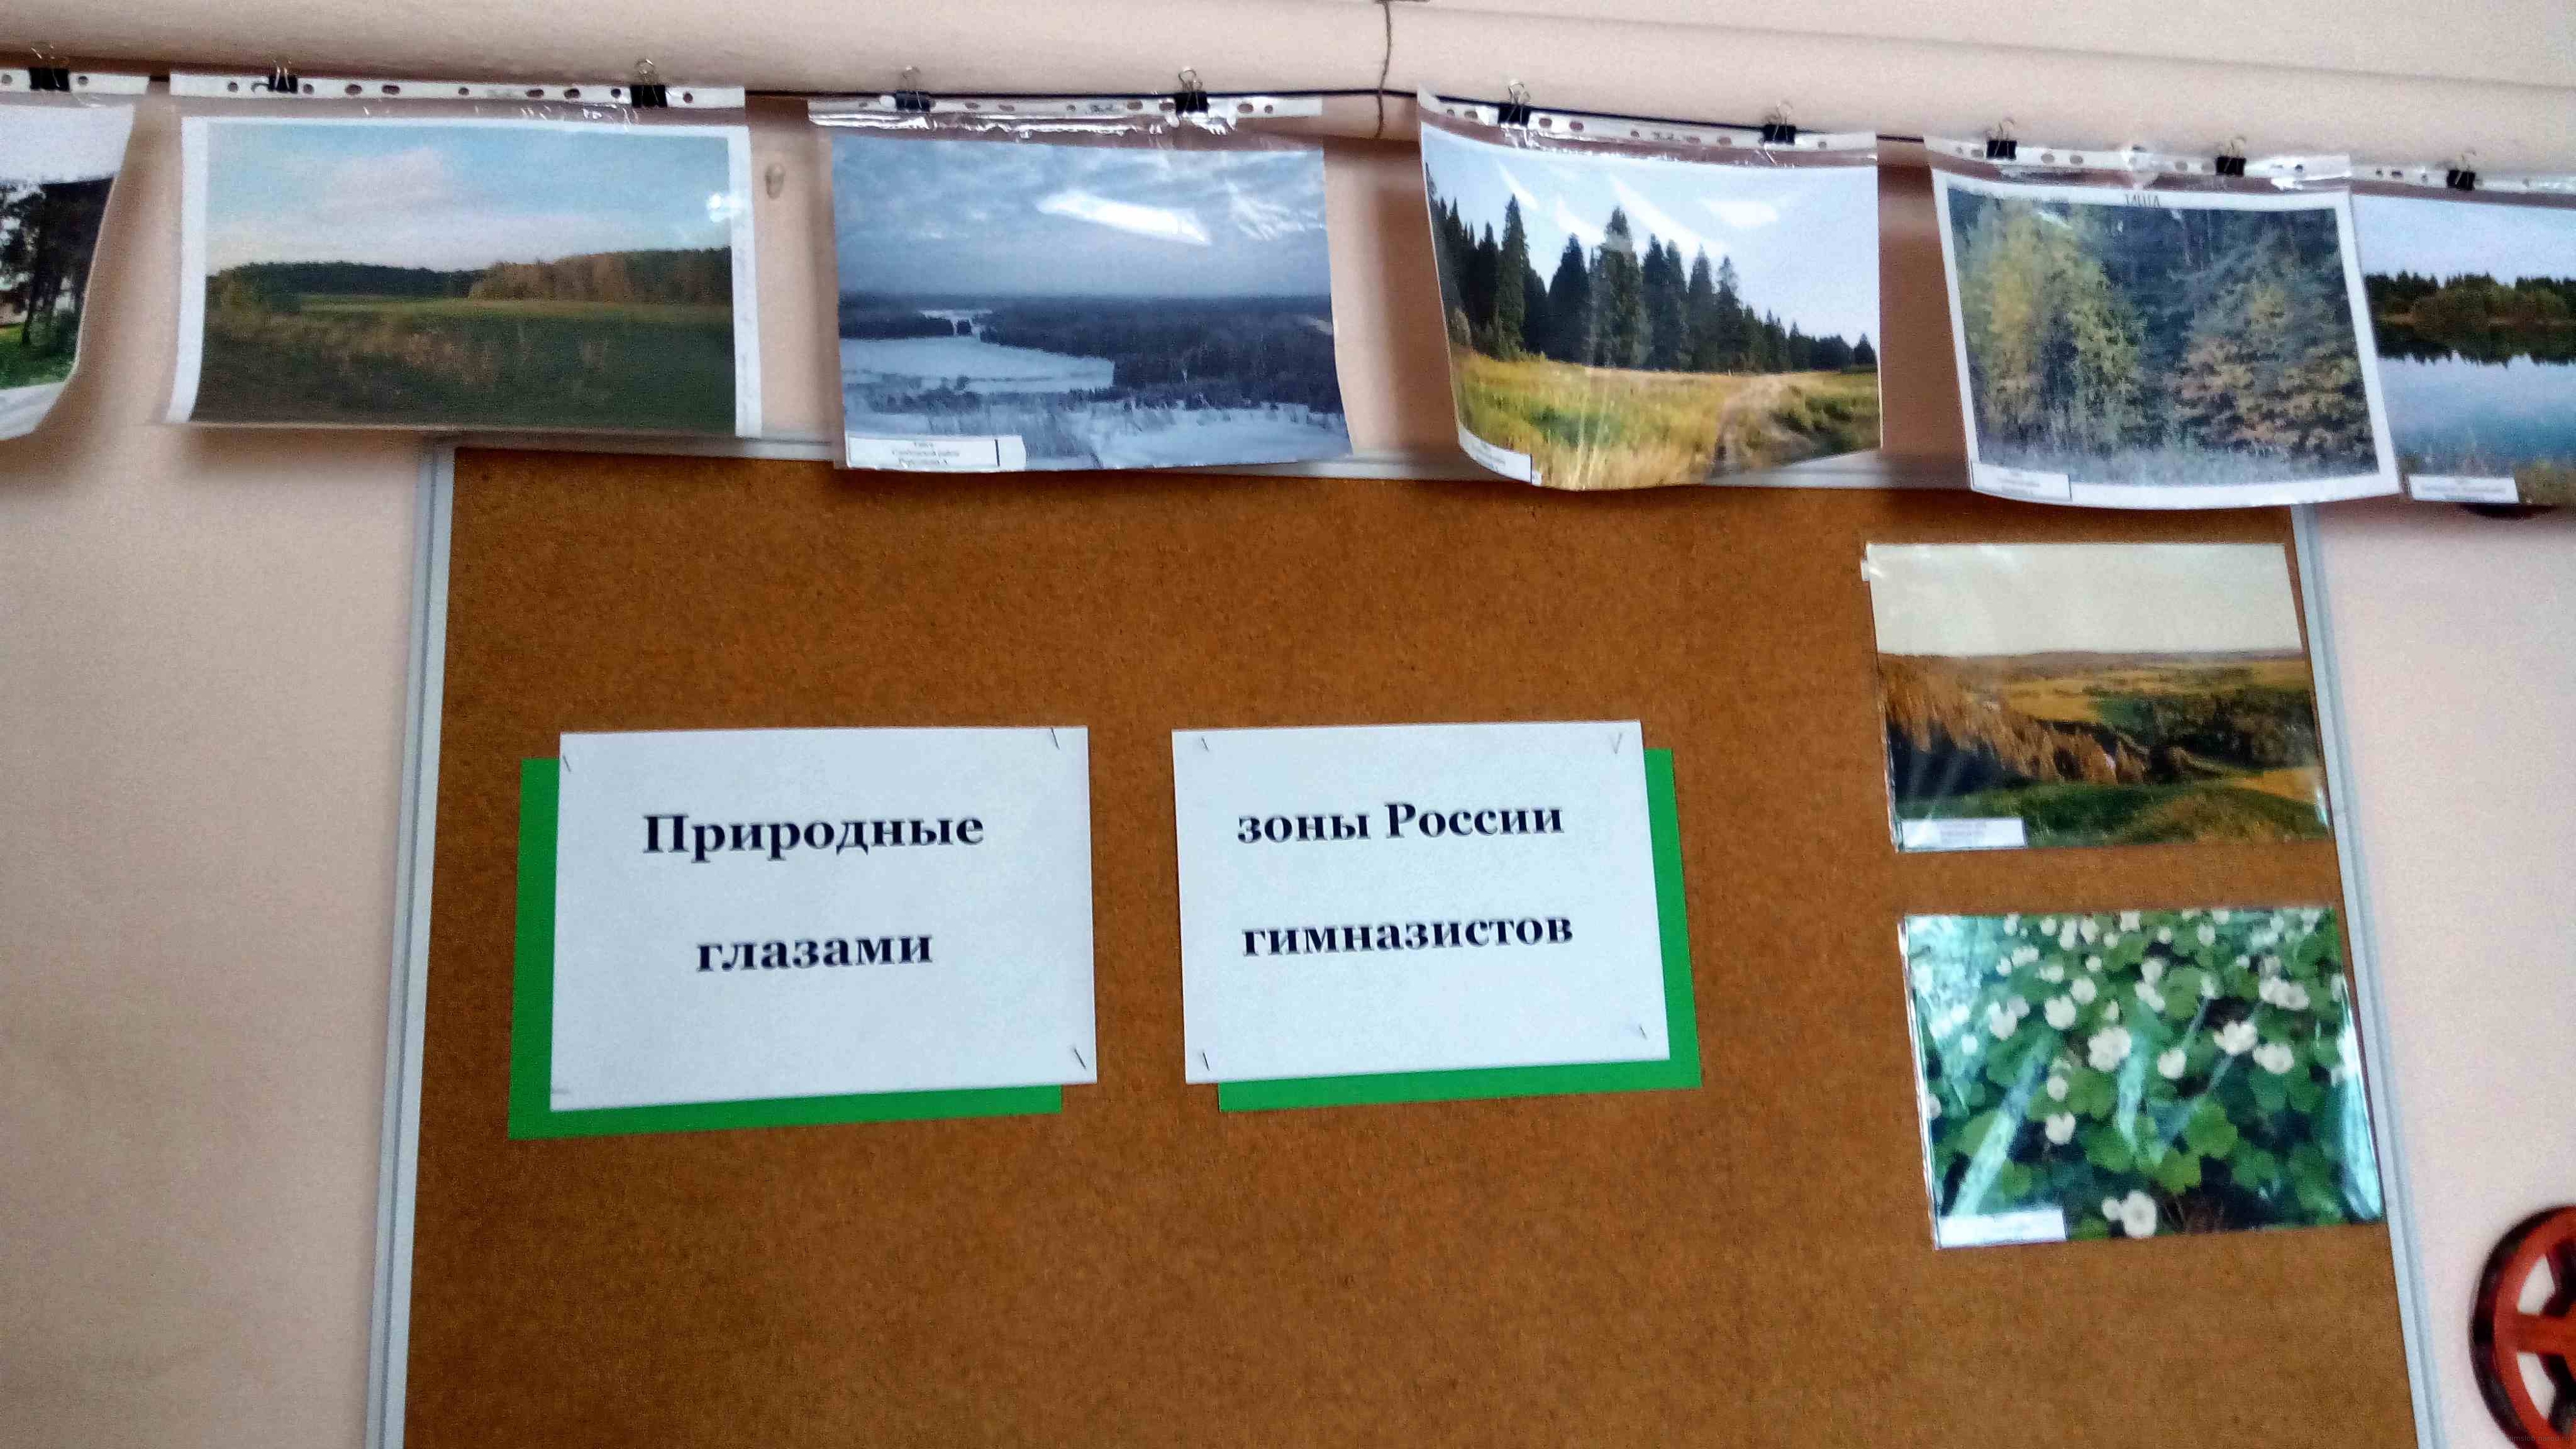 Картинка к материалу: «Природные зоны России глазами гимназистов»